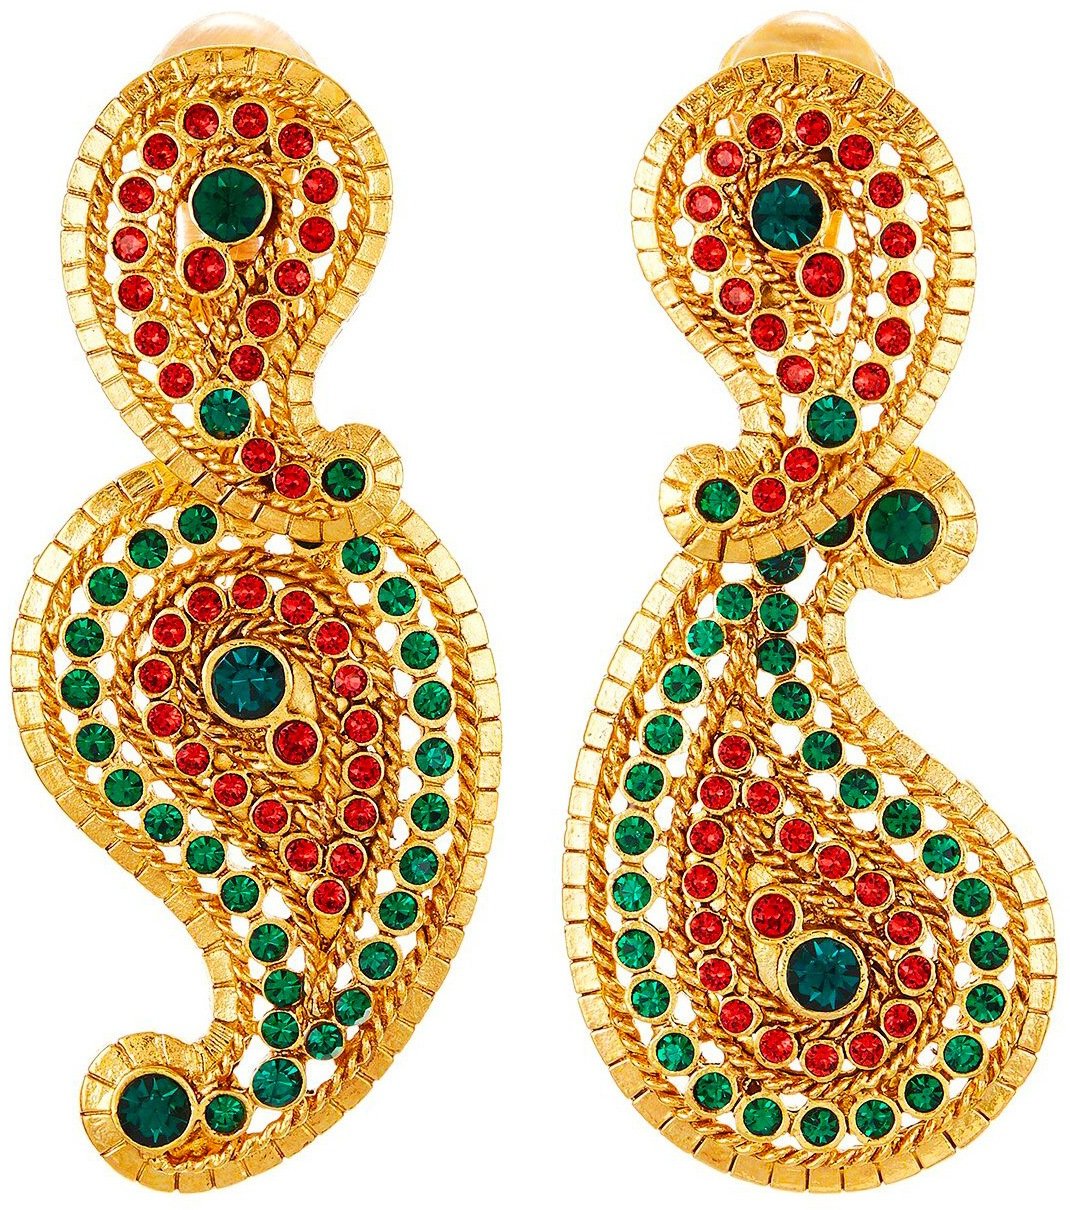 Oscar de la Renta Pavé Paisley Earrings with emerald and scarlet Swarovski crystals